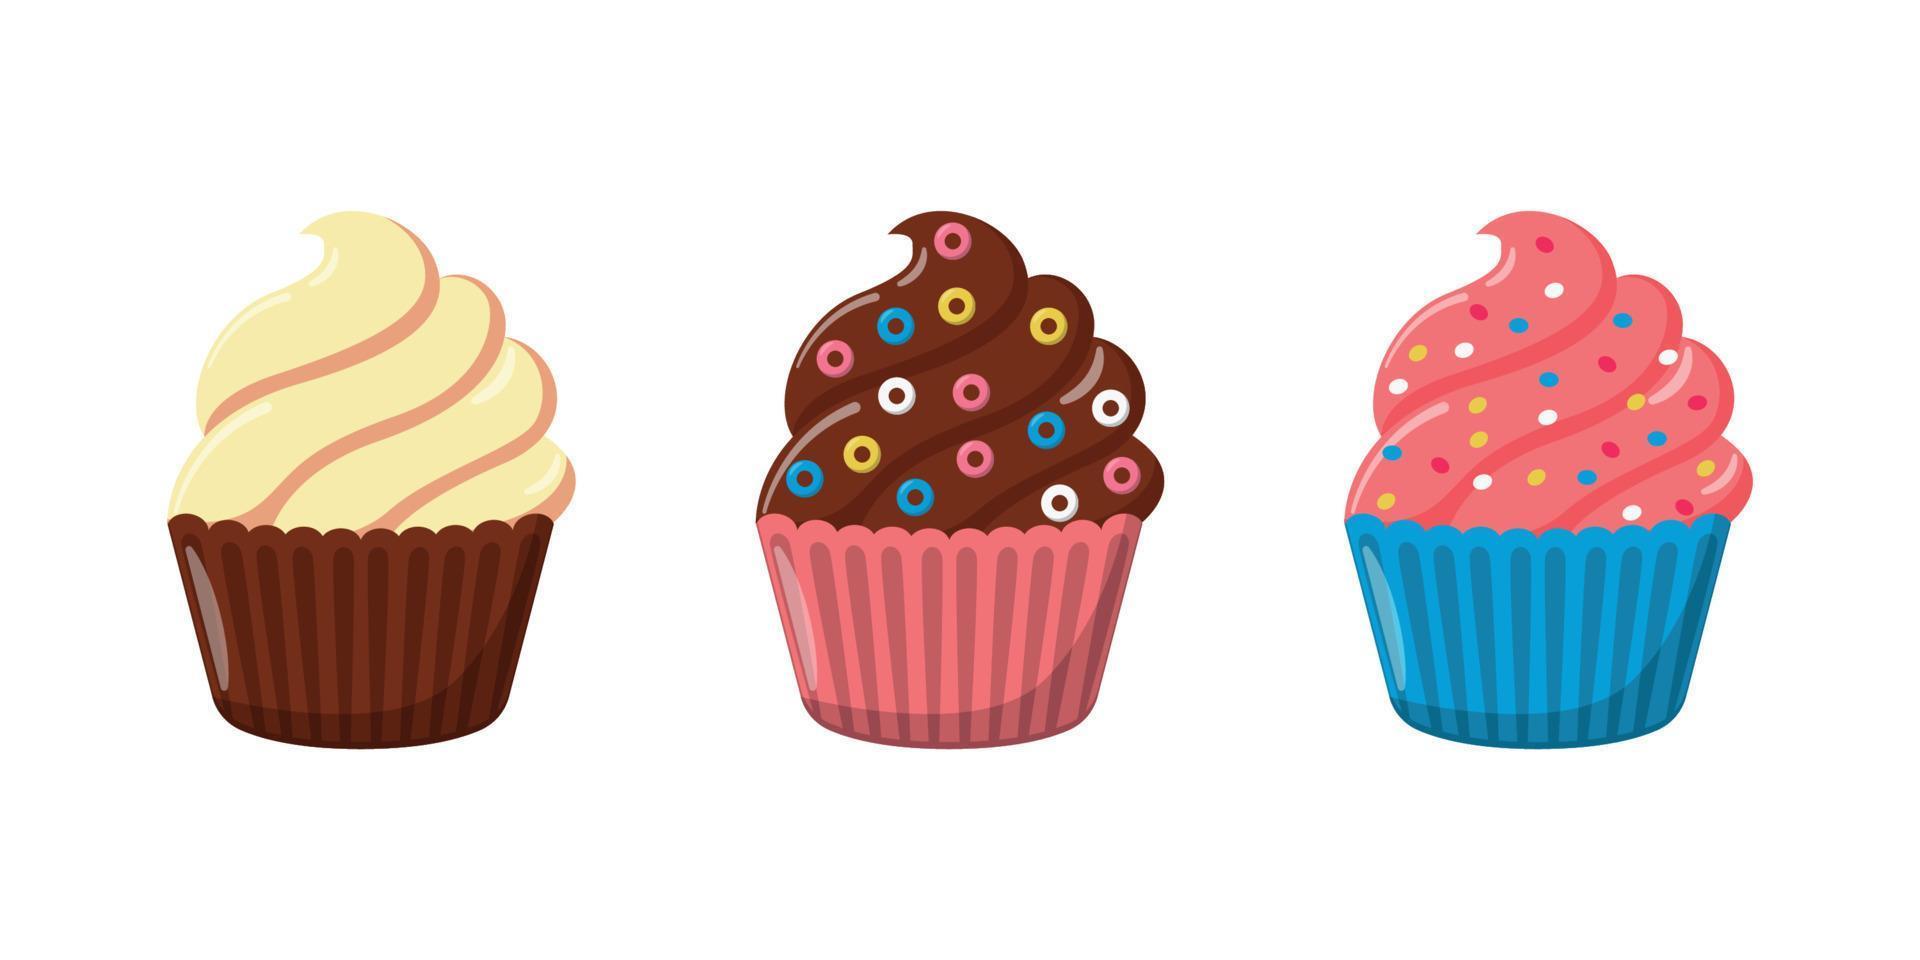 köstlich Cupcake Illustration Design mit Sahne Belag vektor